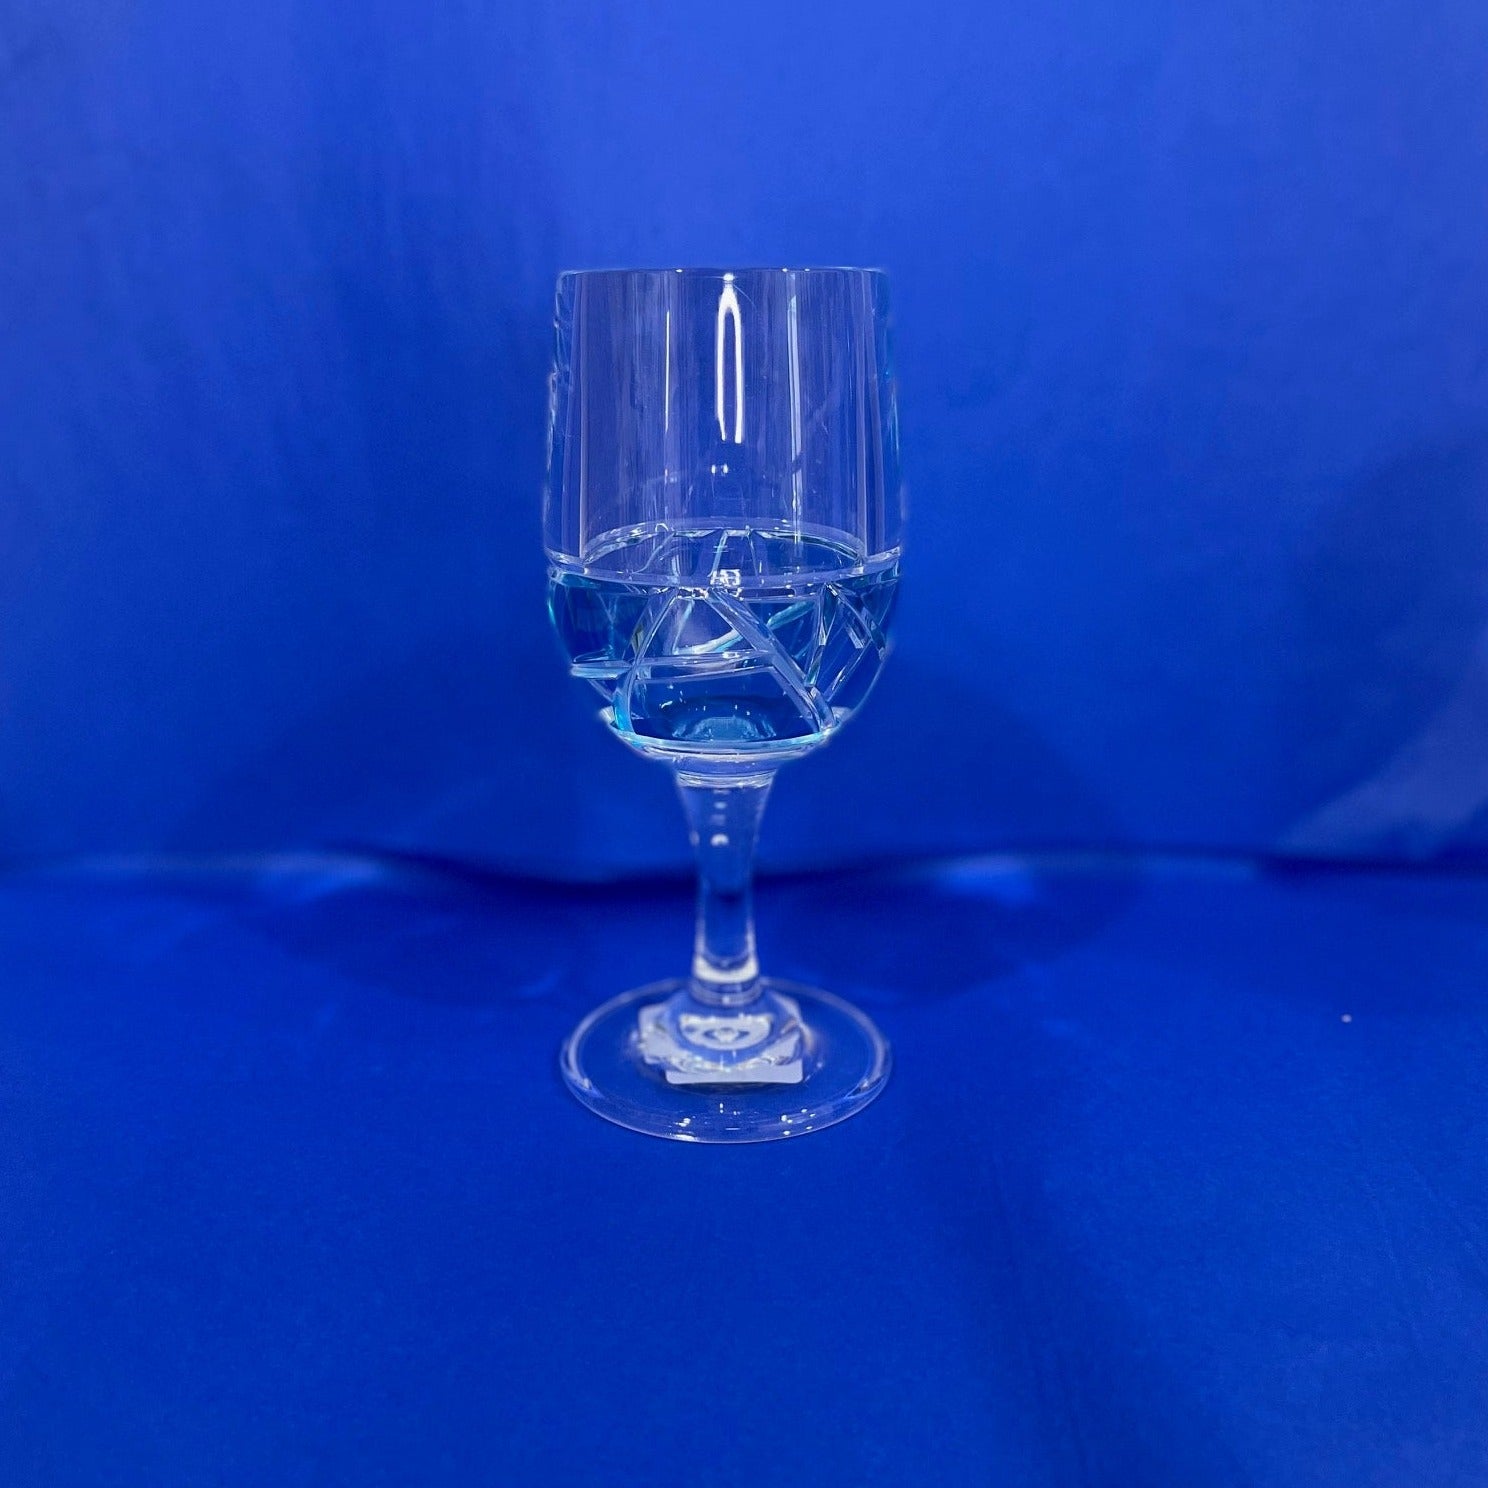 Azure Mosaic Acrylic Wine Glass